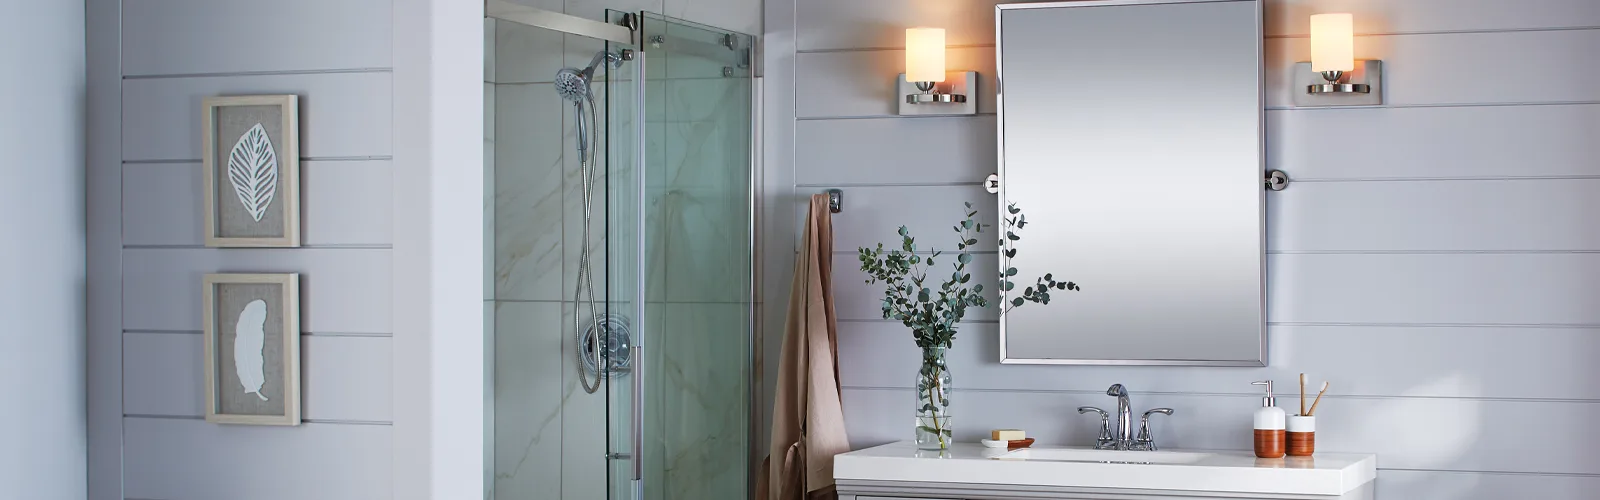 Comment bien nettoyer ses portes de douche en verre et ses miroirs